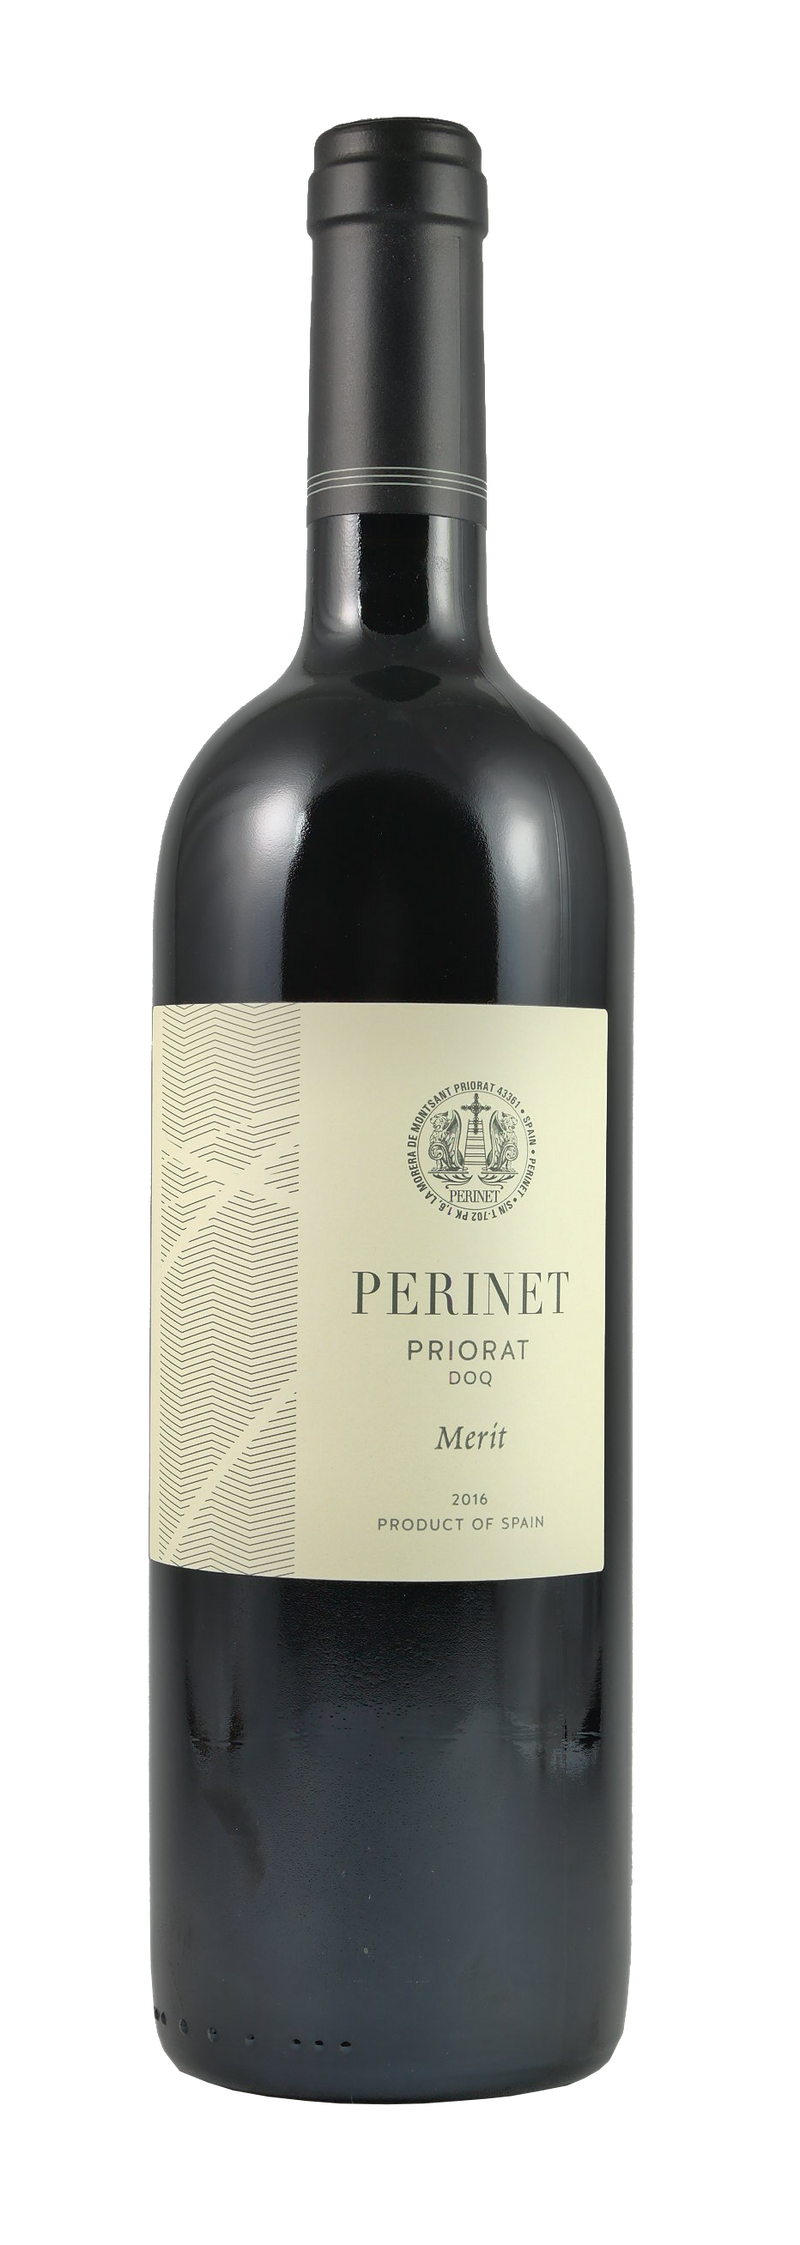 Perinet Priorat Merit 2016